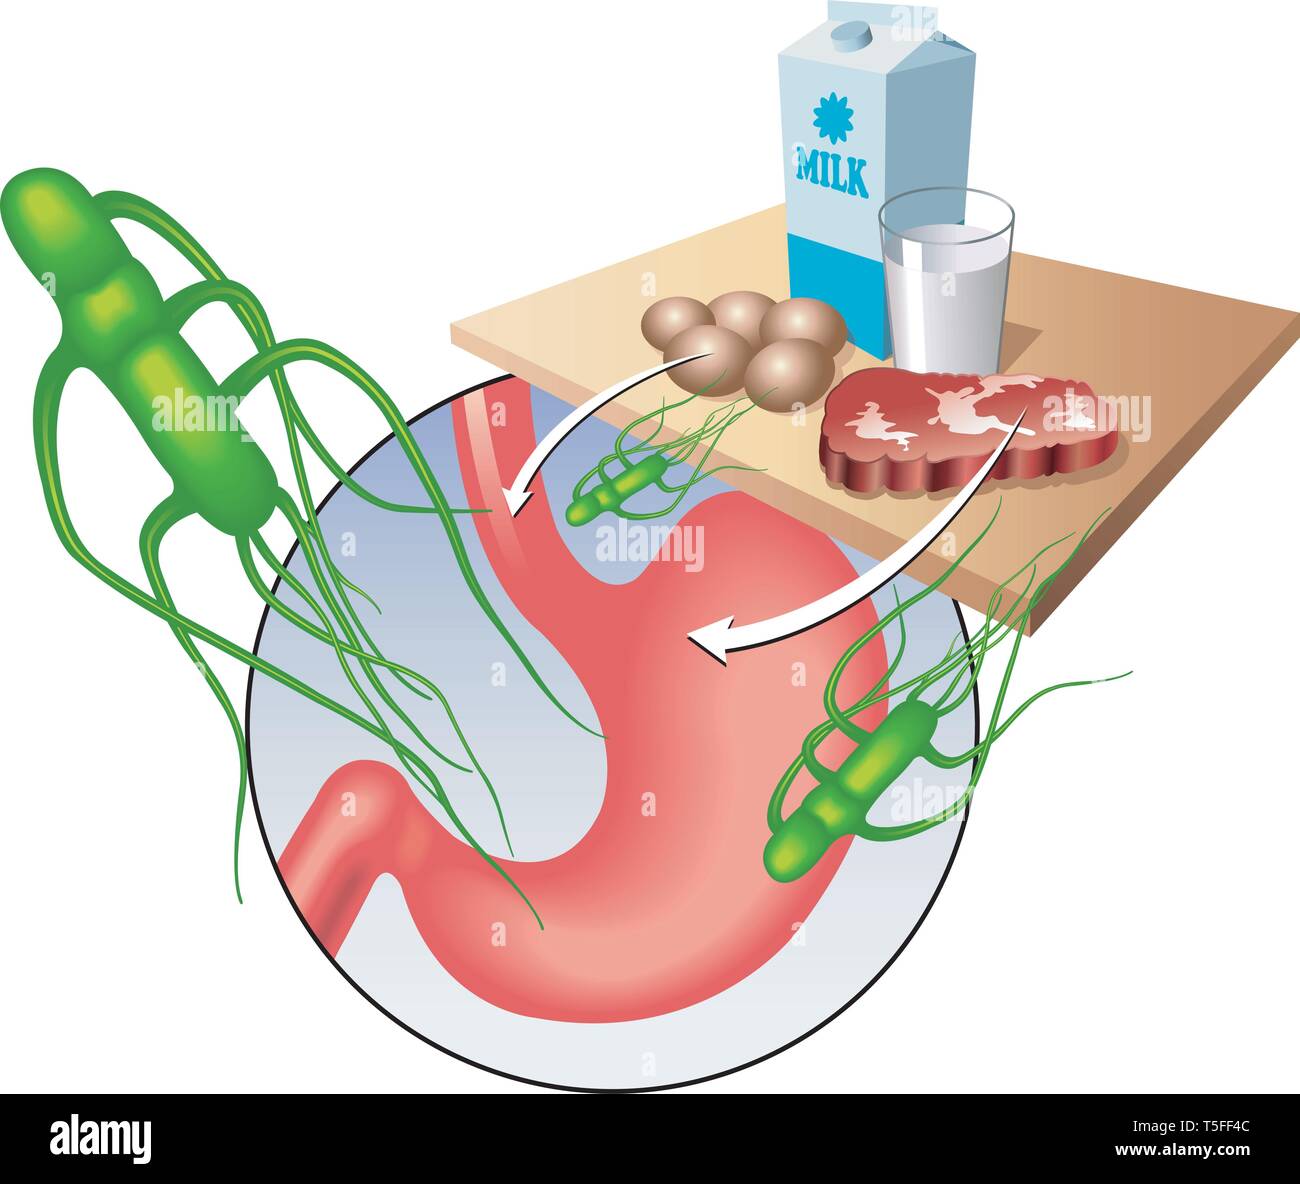 Medical illustrazione che mostra il virus di salmonella e i principali alimenti contaminati. Illustrazione Vettoriale